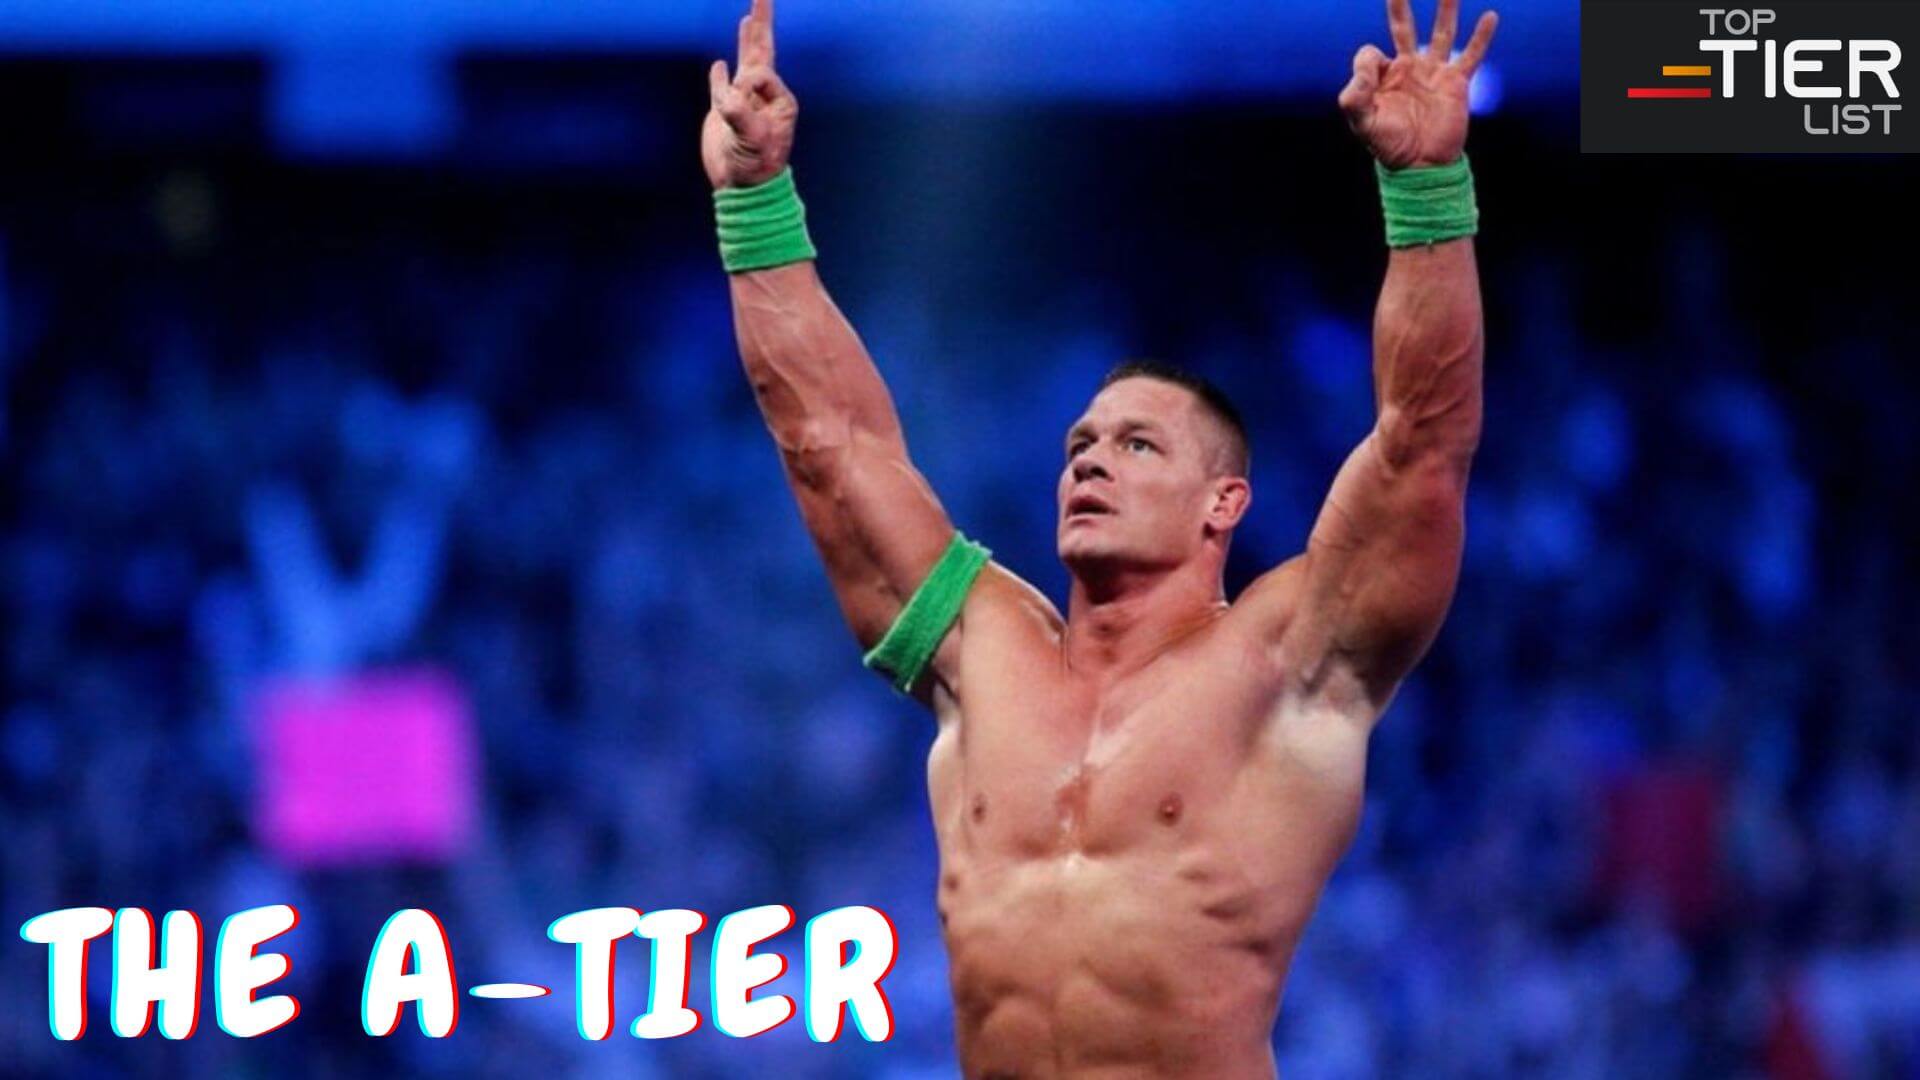 WWE Tier List